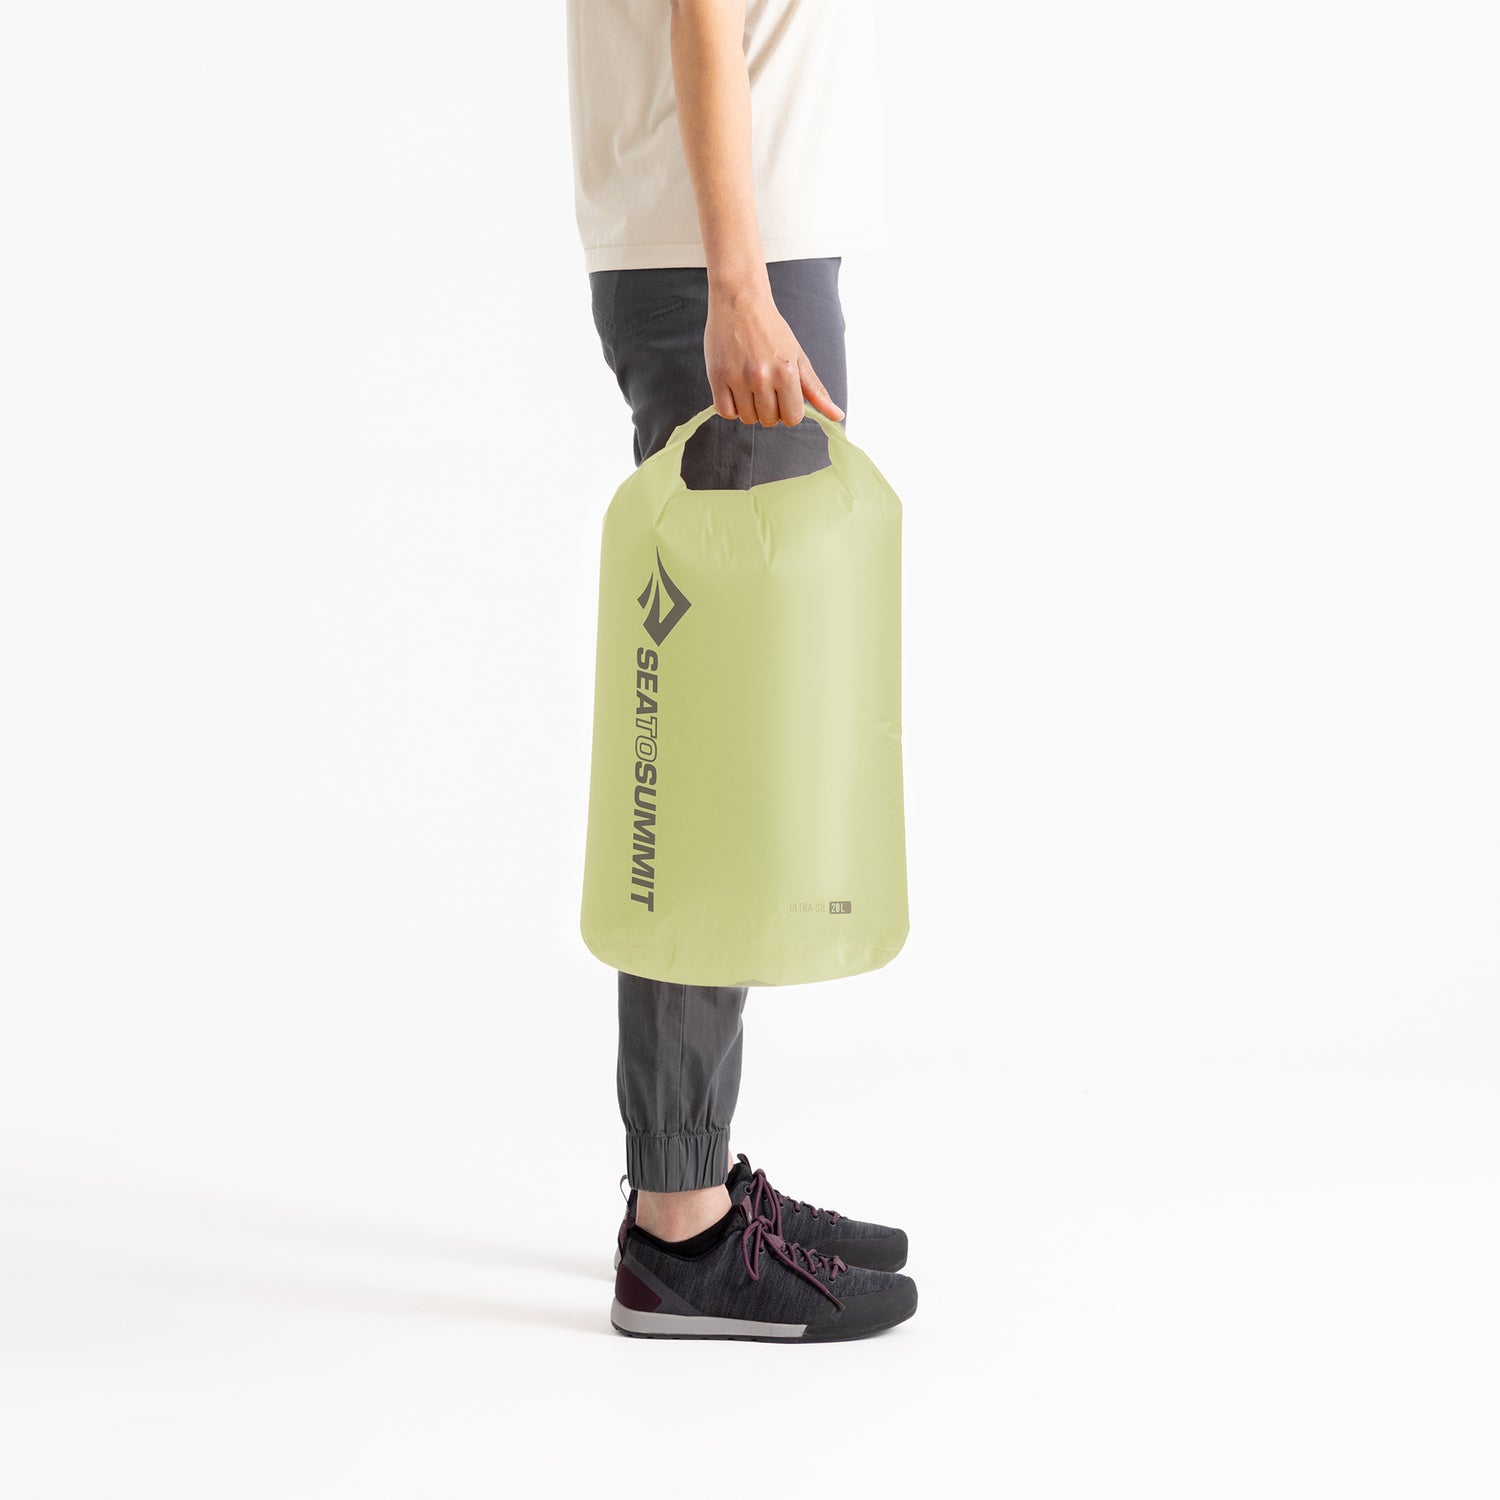 20 liter || Ultra-Sil Dry Bag